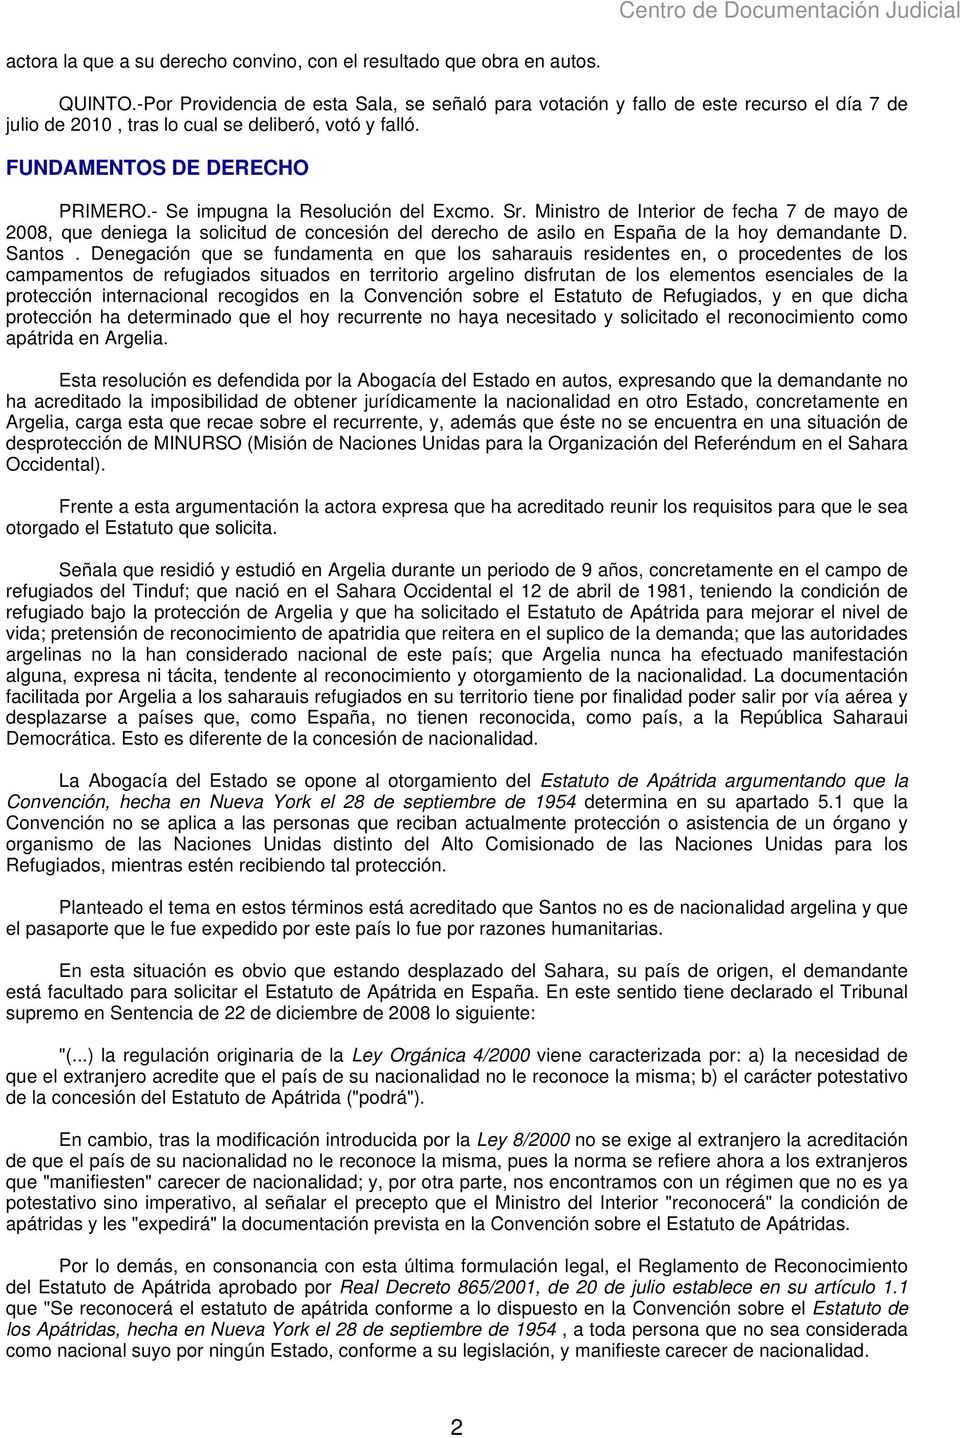 - Se impugna la Resolución del Excmo. Sr. Ministro de Interior de fecha 7 de mayo de 2008, que deniega la solicitud de concesión del derecho de asilo en España de la hoy demandante D. Santos.